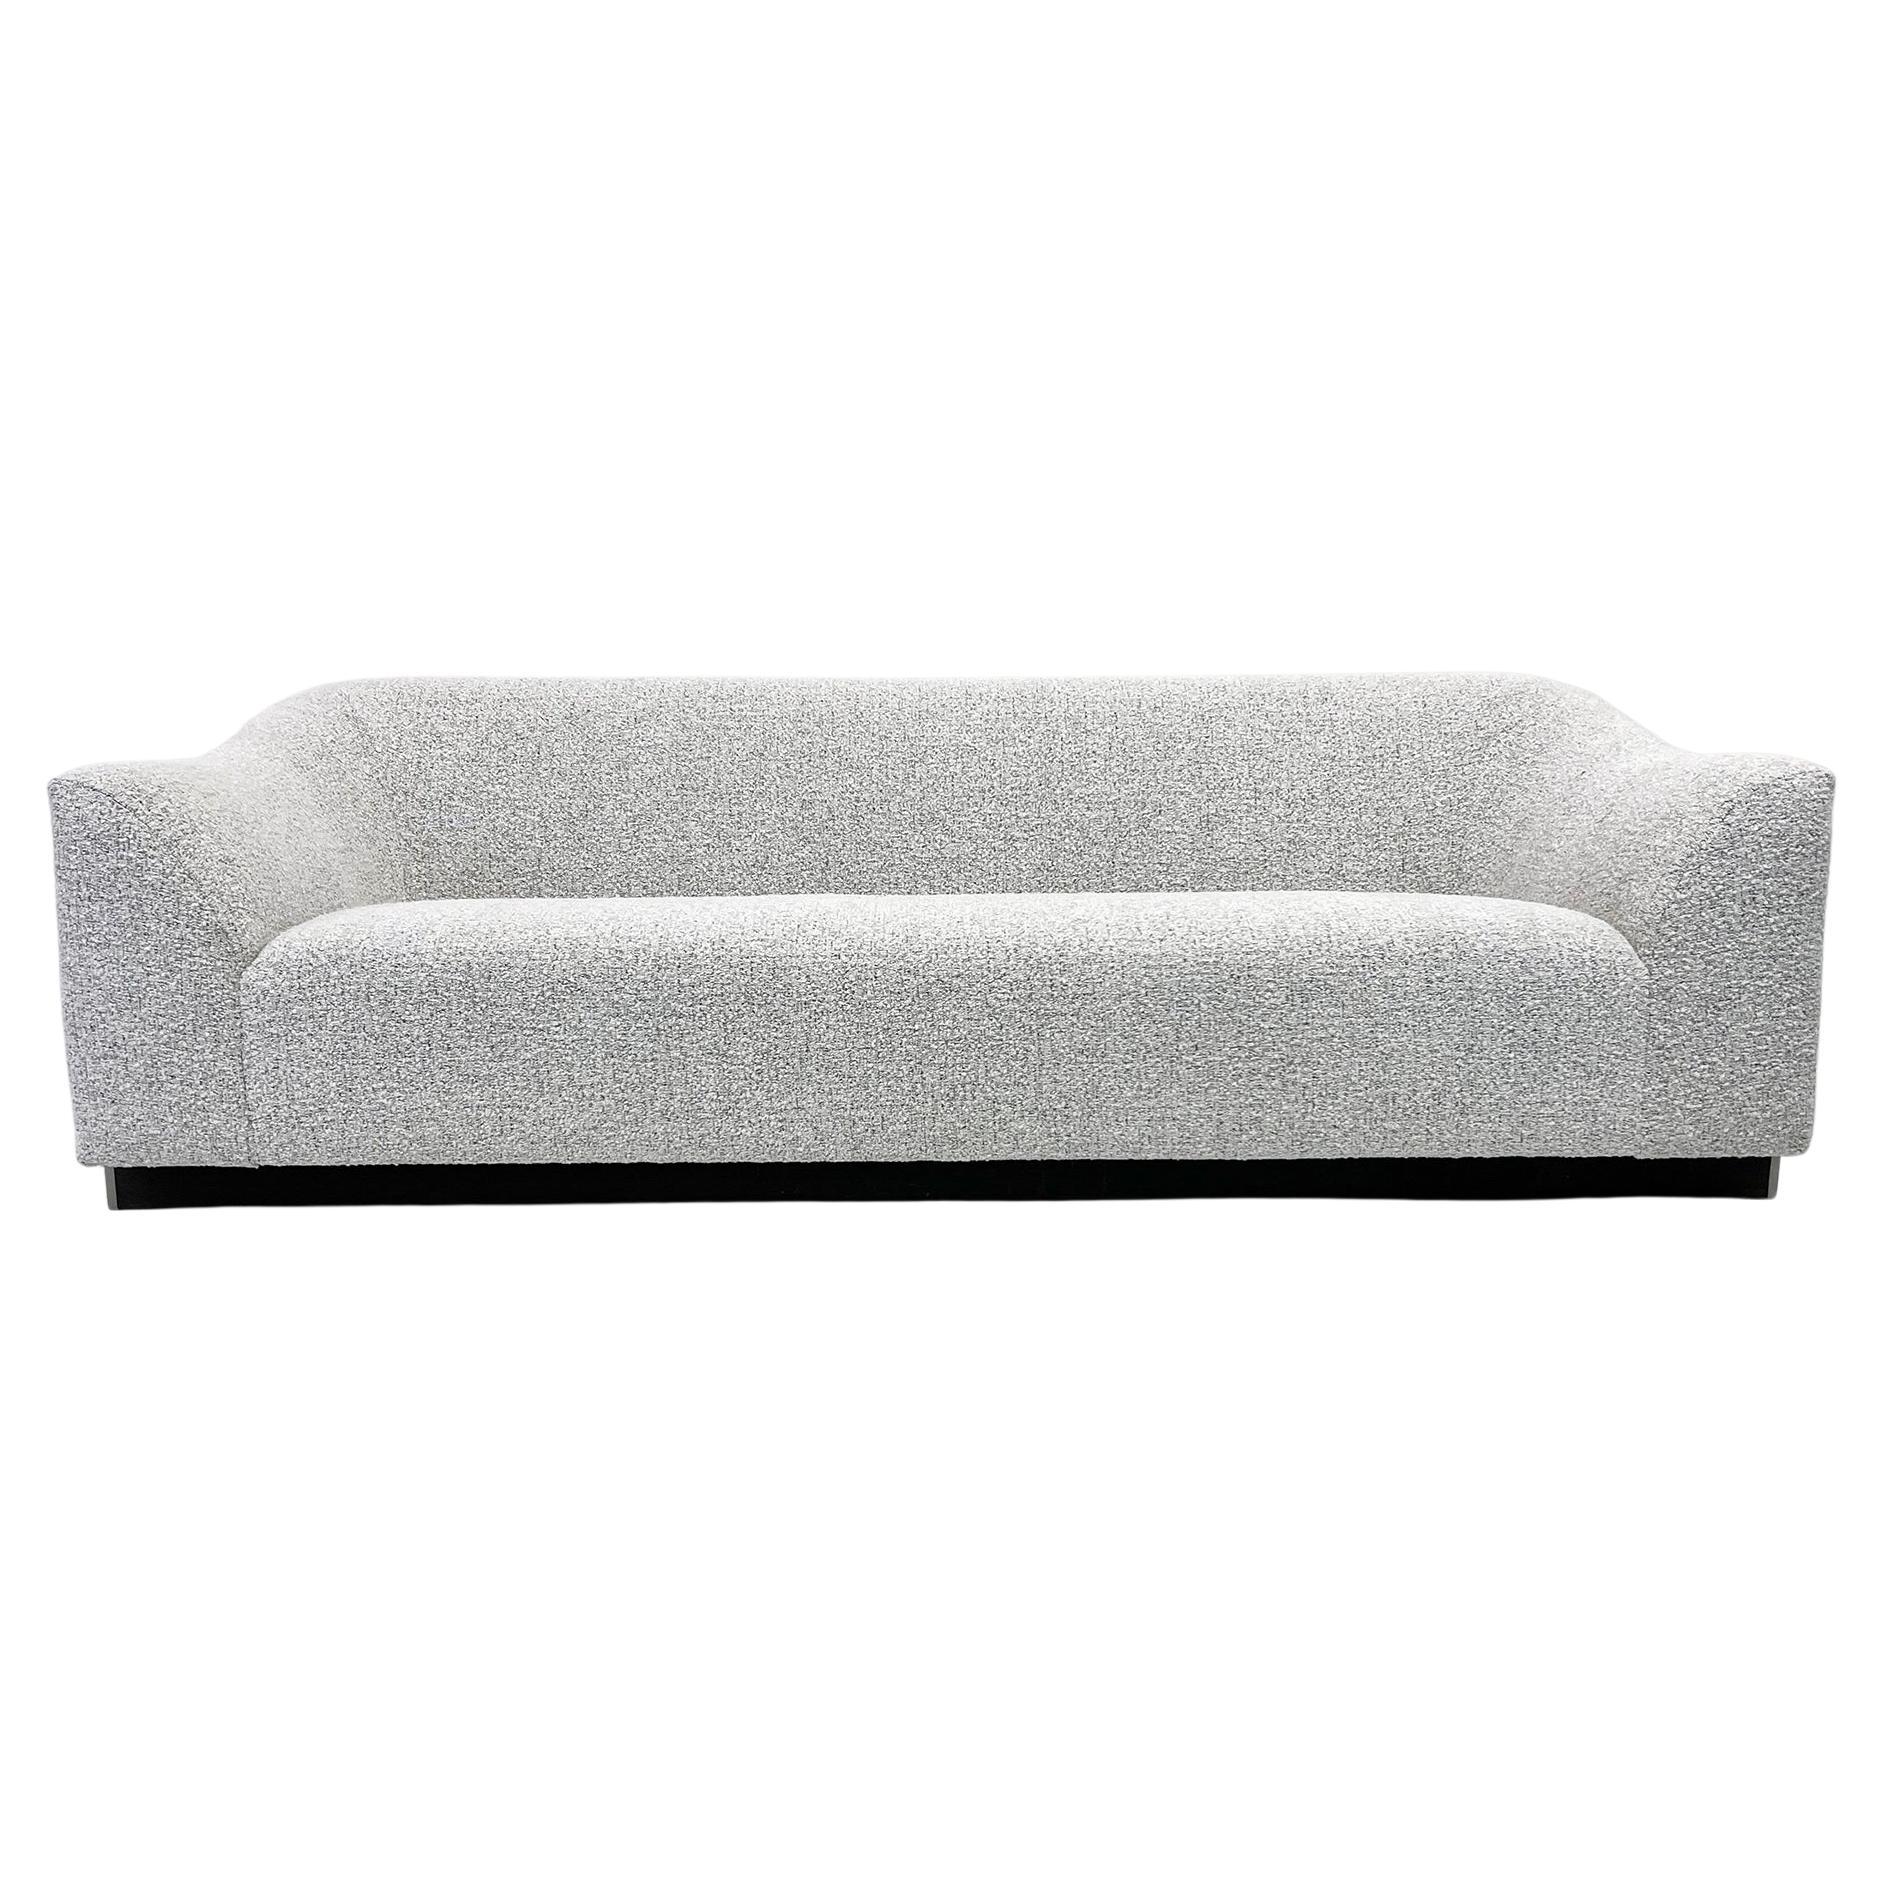 Eric Jourdan Snowdonia Modern Sofa for Ligne Roset in Black and White Boucle